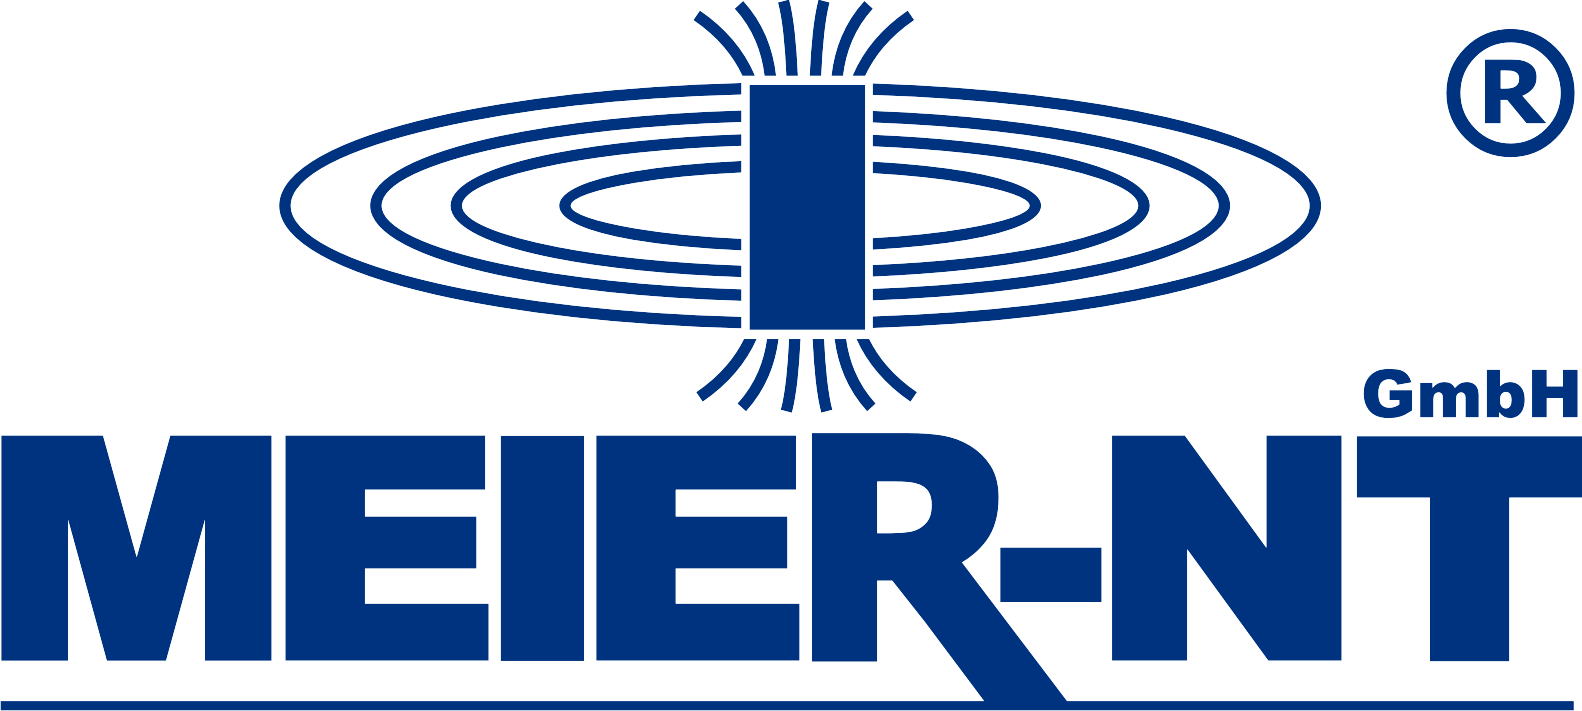 Meier-NT Logo